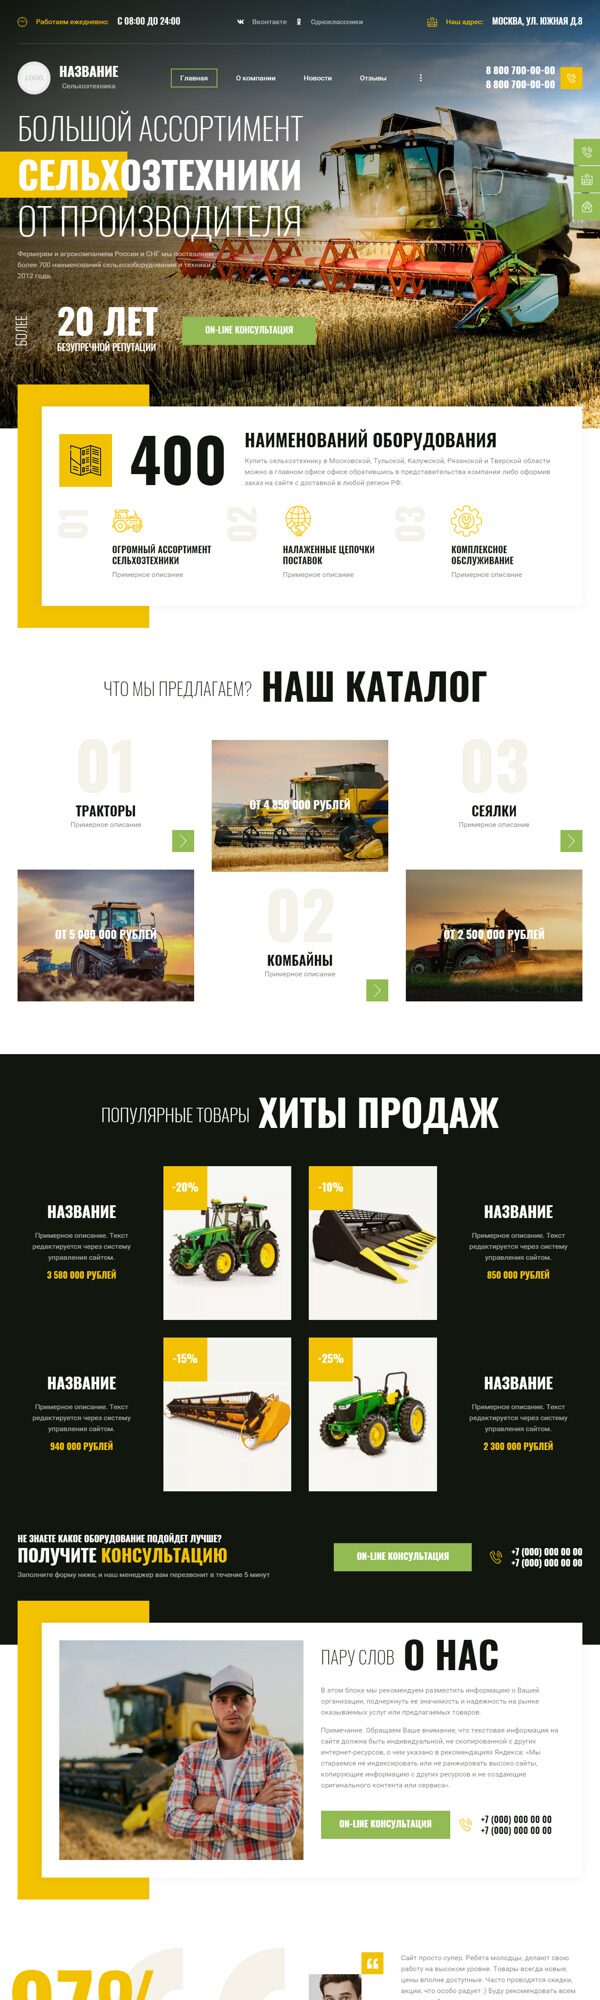 Готовый Сайт-Бизнес № 4960891 - Оборудование для сельского хозяйства (Десктопная версия)